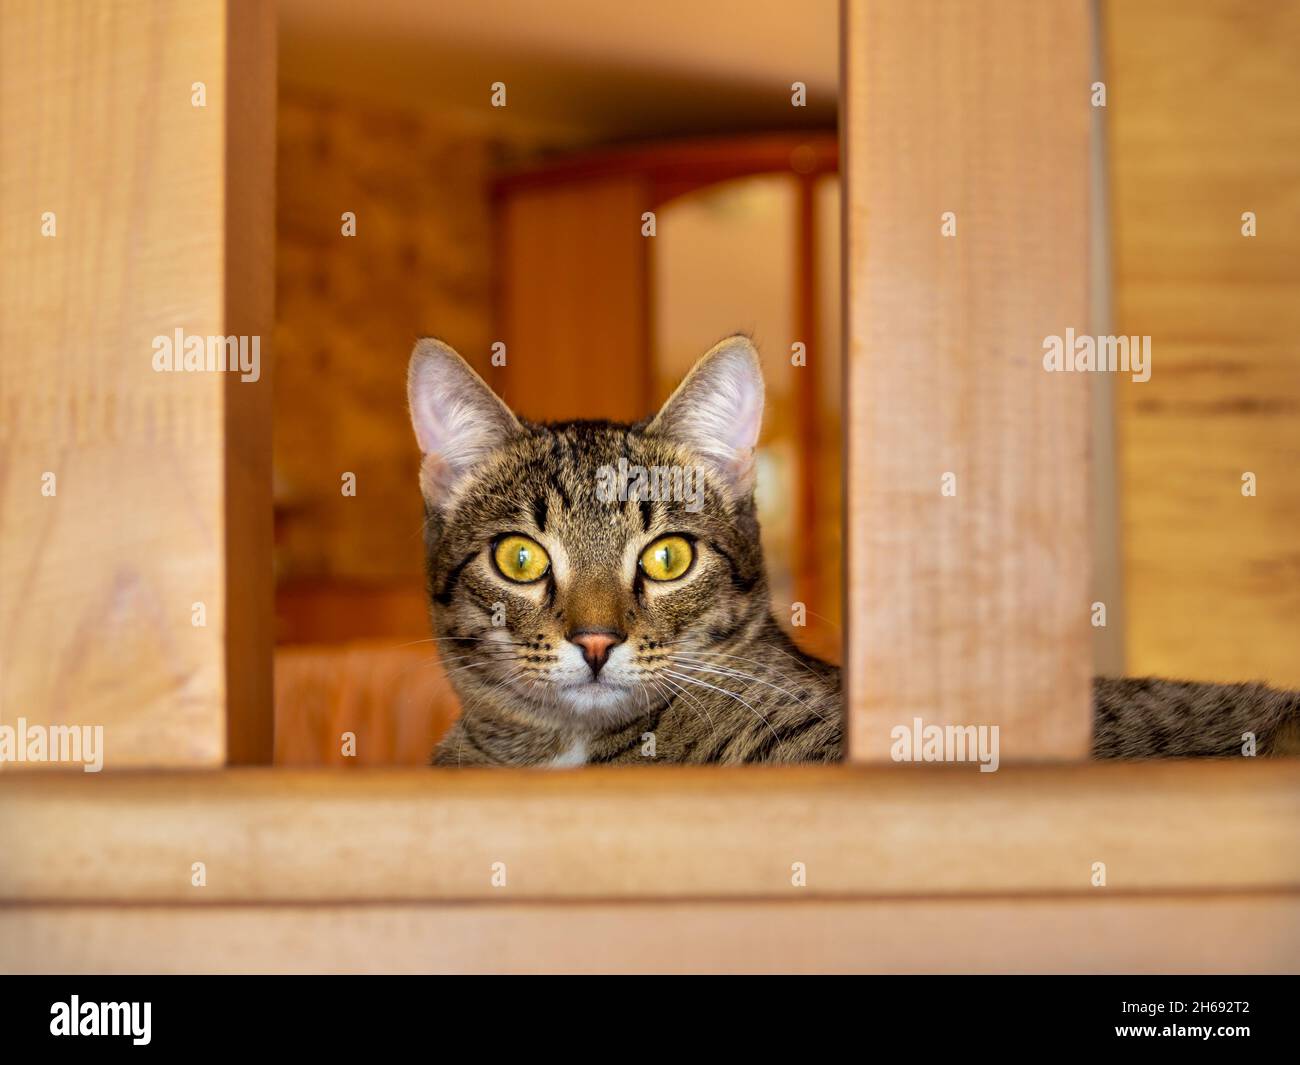 un chat tabby domestique avec des yeux jaunes se trouve sur les escaliers et me regarde, dans la caméra Banque D'Images